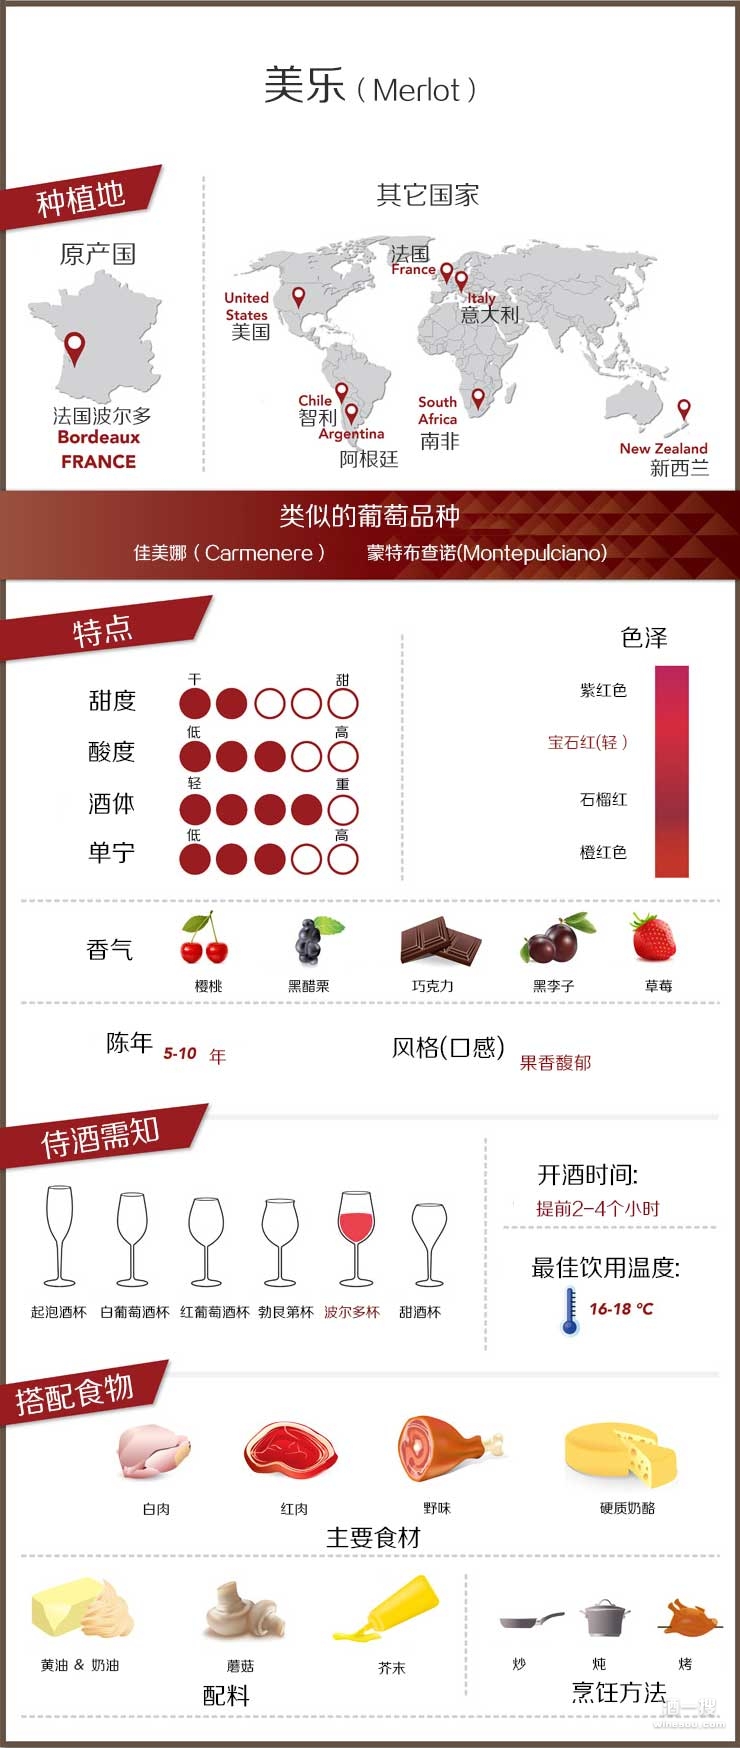 种植最广泛的红葡萄品种之一,几乎所有的主要葡萄酒产国都有广泛种植